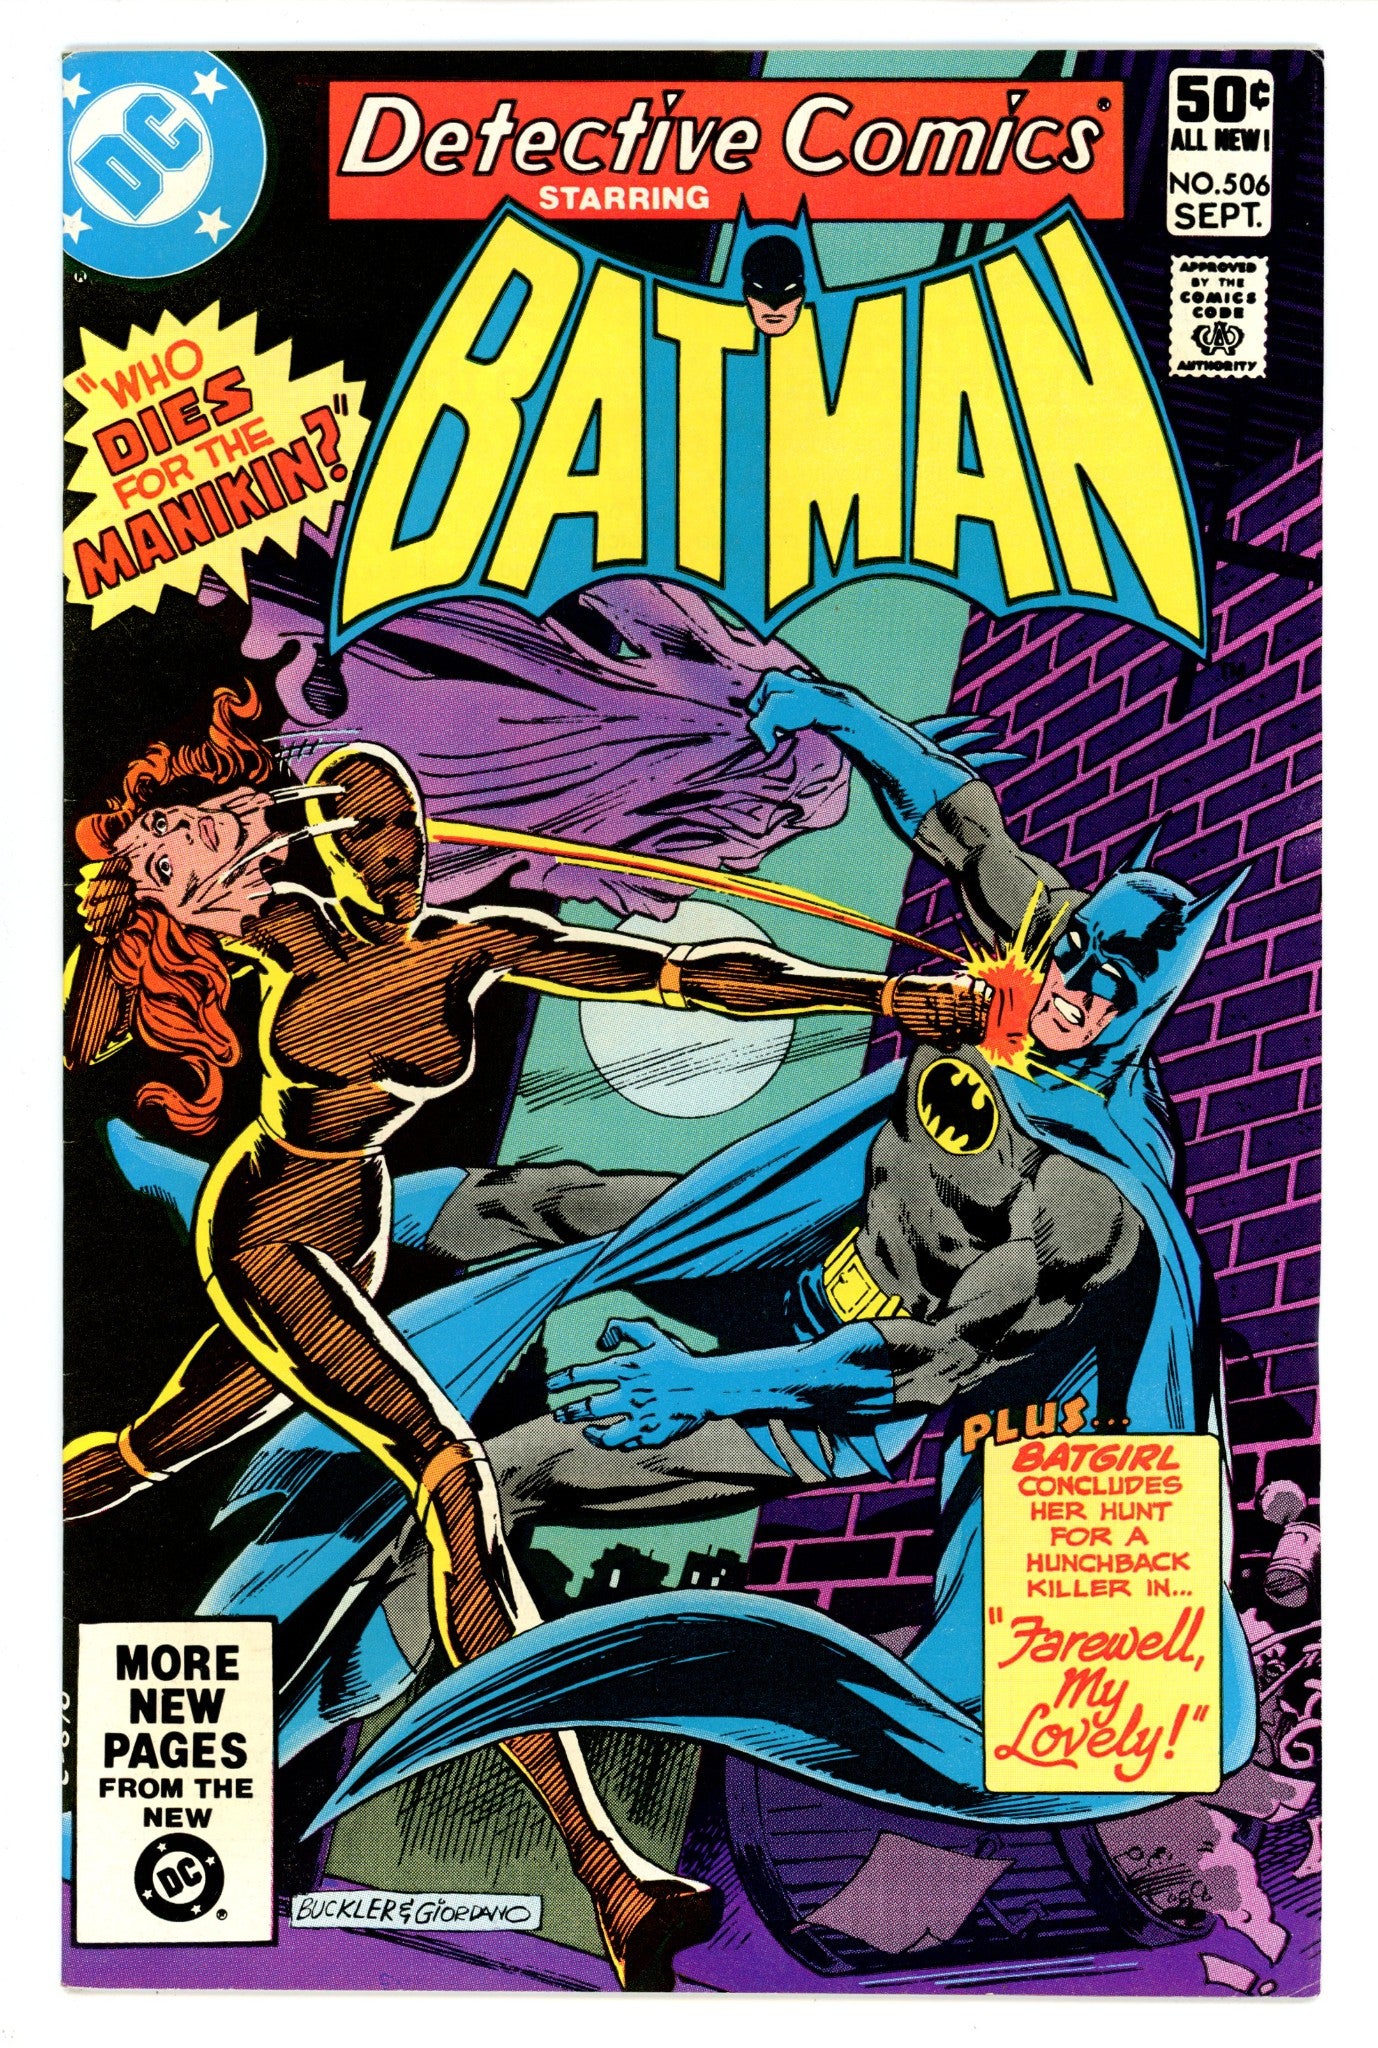 Detective Comics Vol 1 506 FN+ (6.5) (1981) 